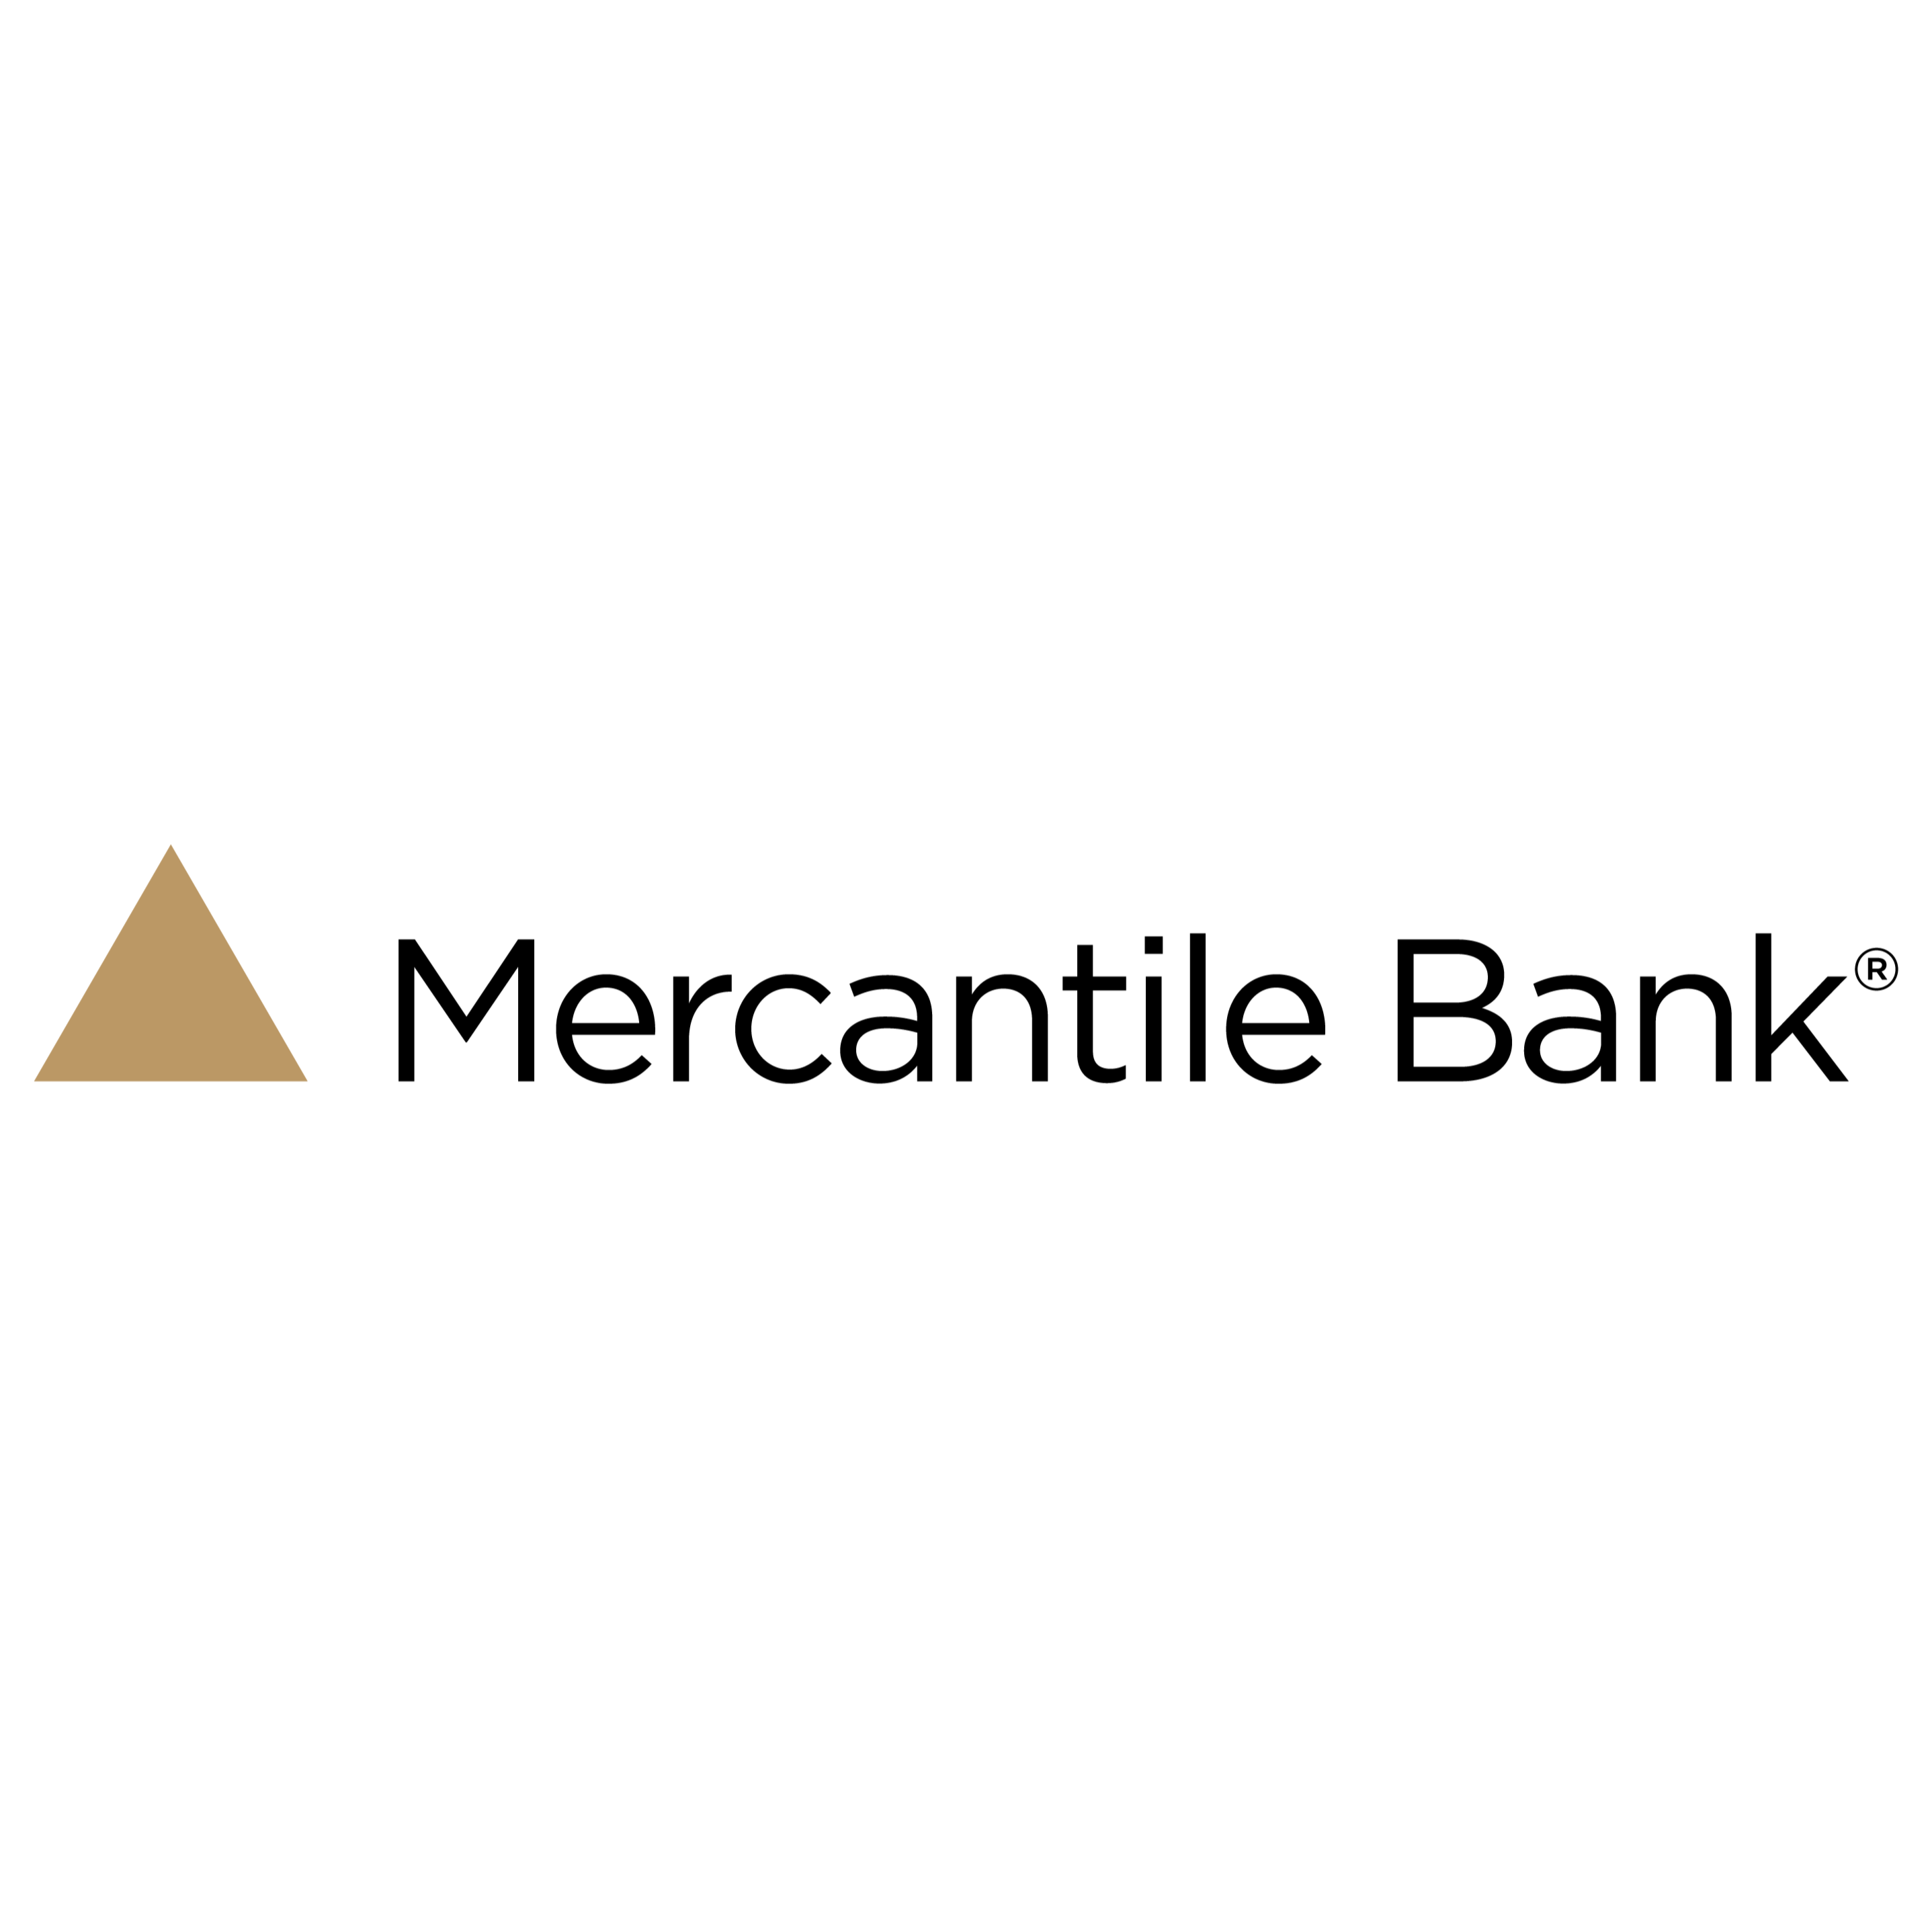 Mercantile Bank - Ionia, MI 48846 - (616)527-9250 | ShowMeLocal.com